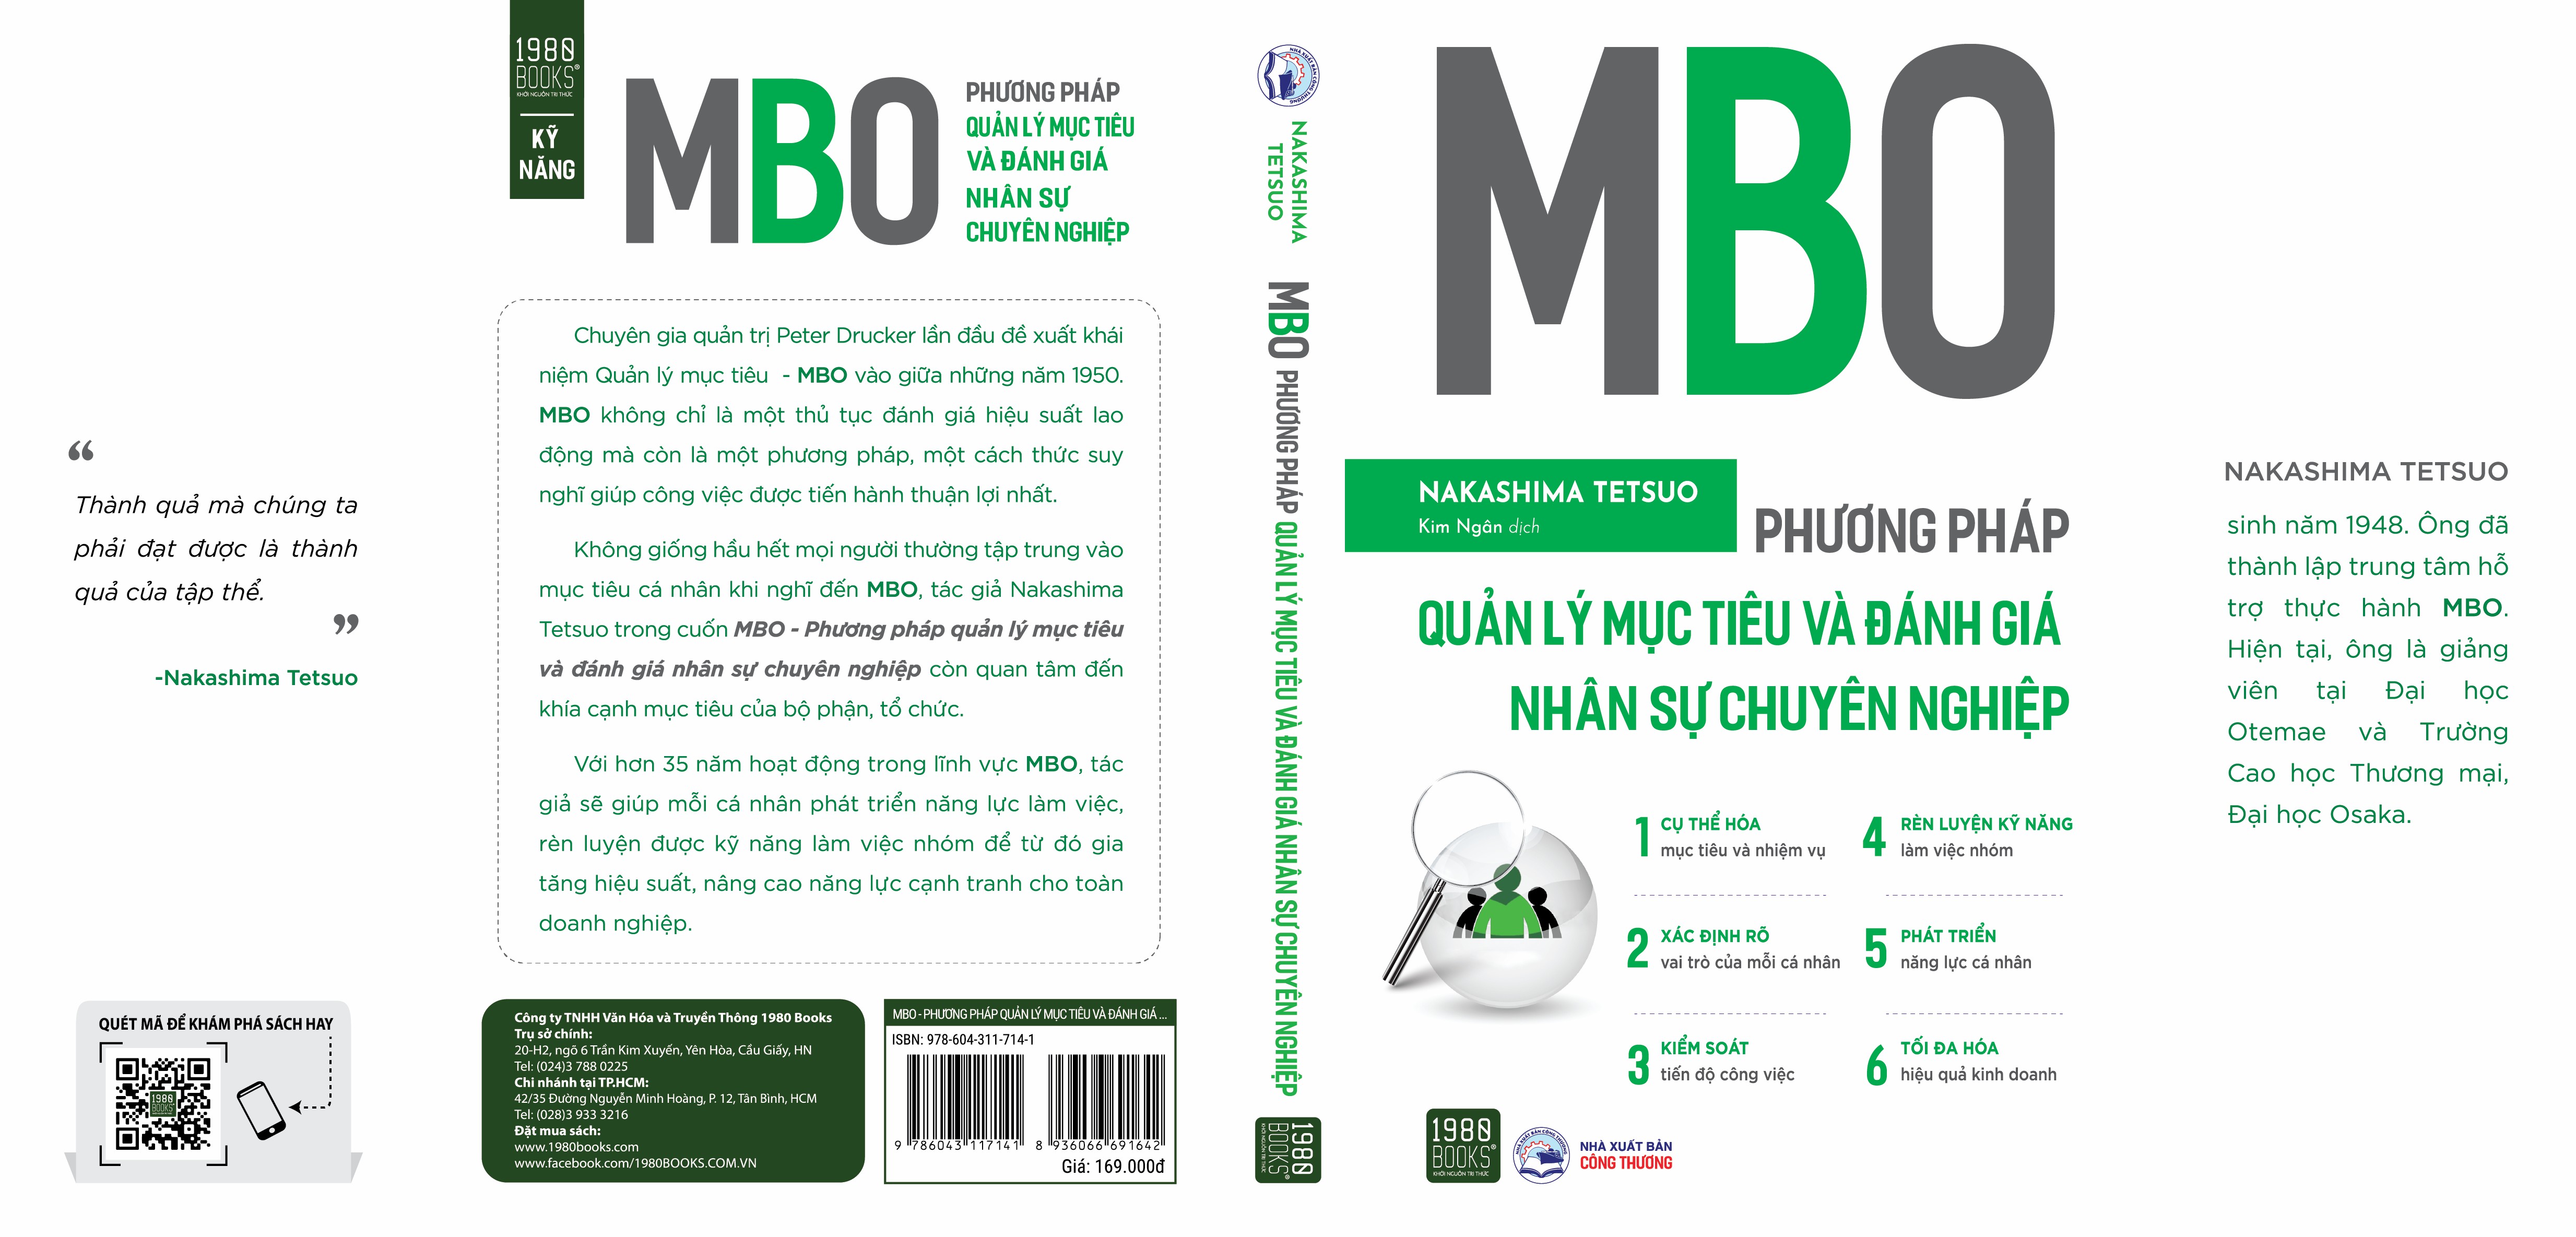 Hình ảnh Sách - MBO Phương pháp quản lý mục tiêu và đánh giá nhân sự chuyên nghiệp - 1980Books